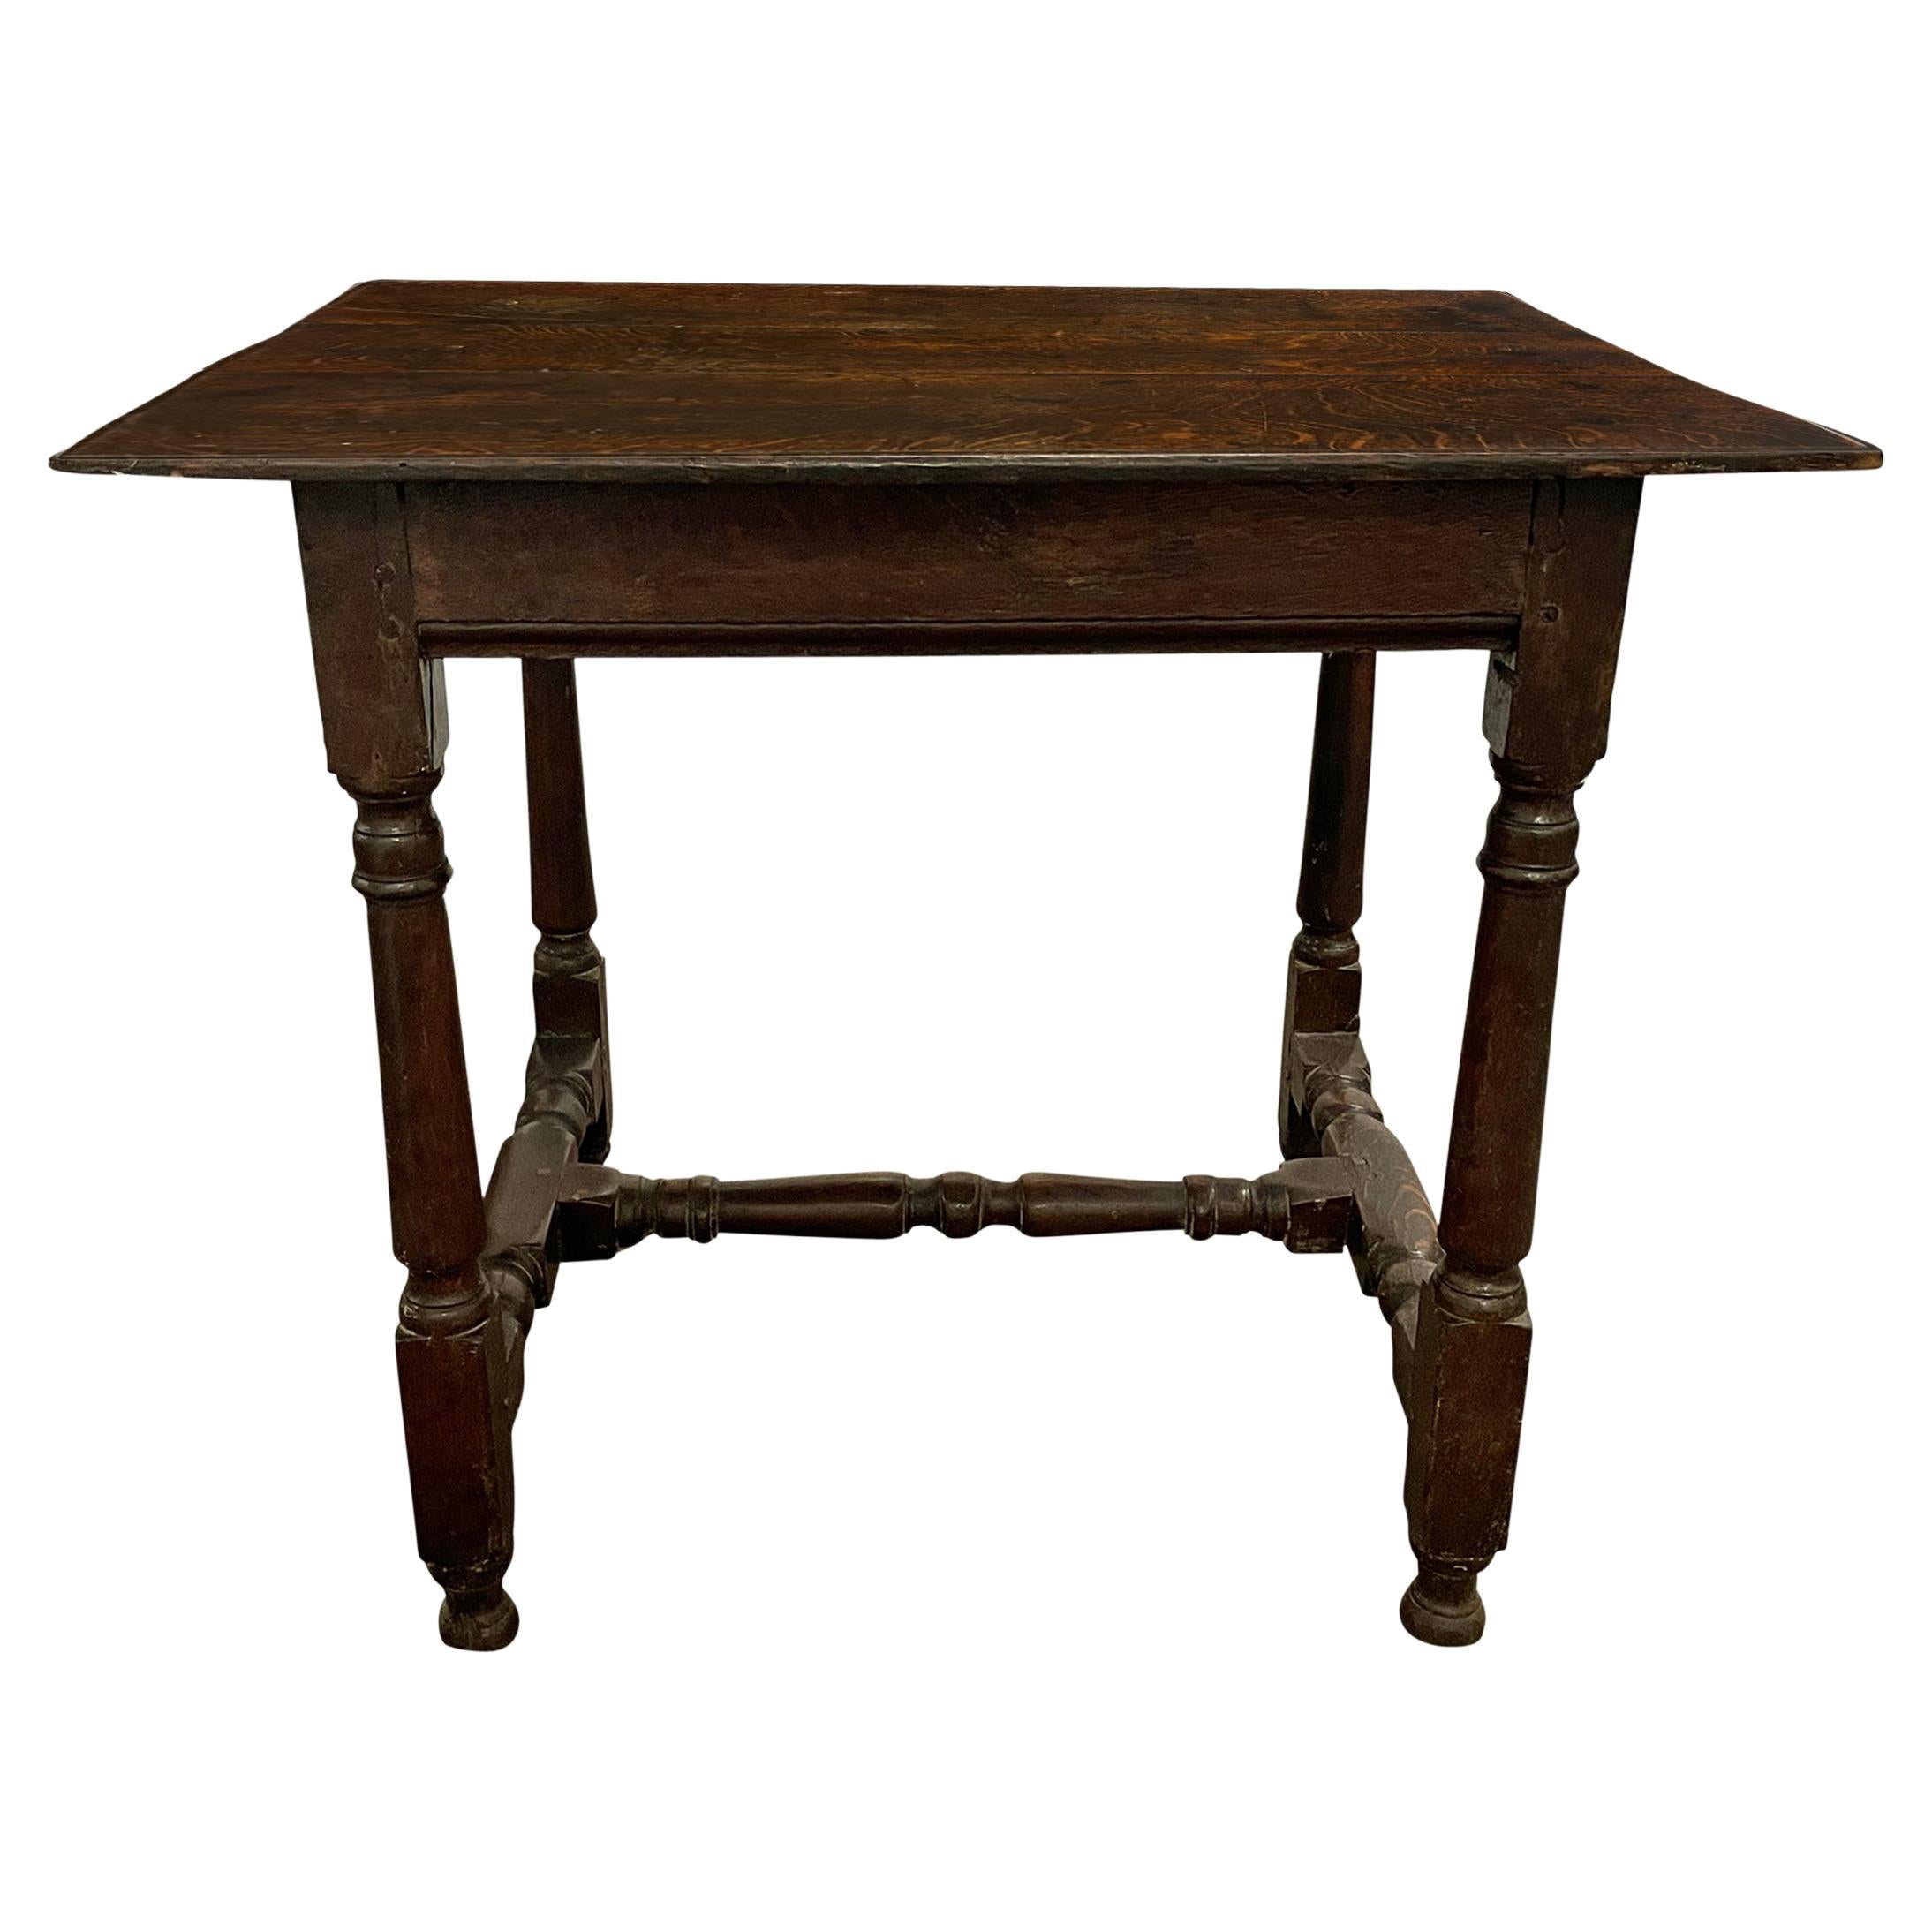 Englischer Eichenholztisch aus dem 17. Jahrhundert